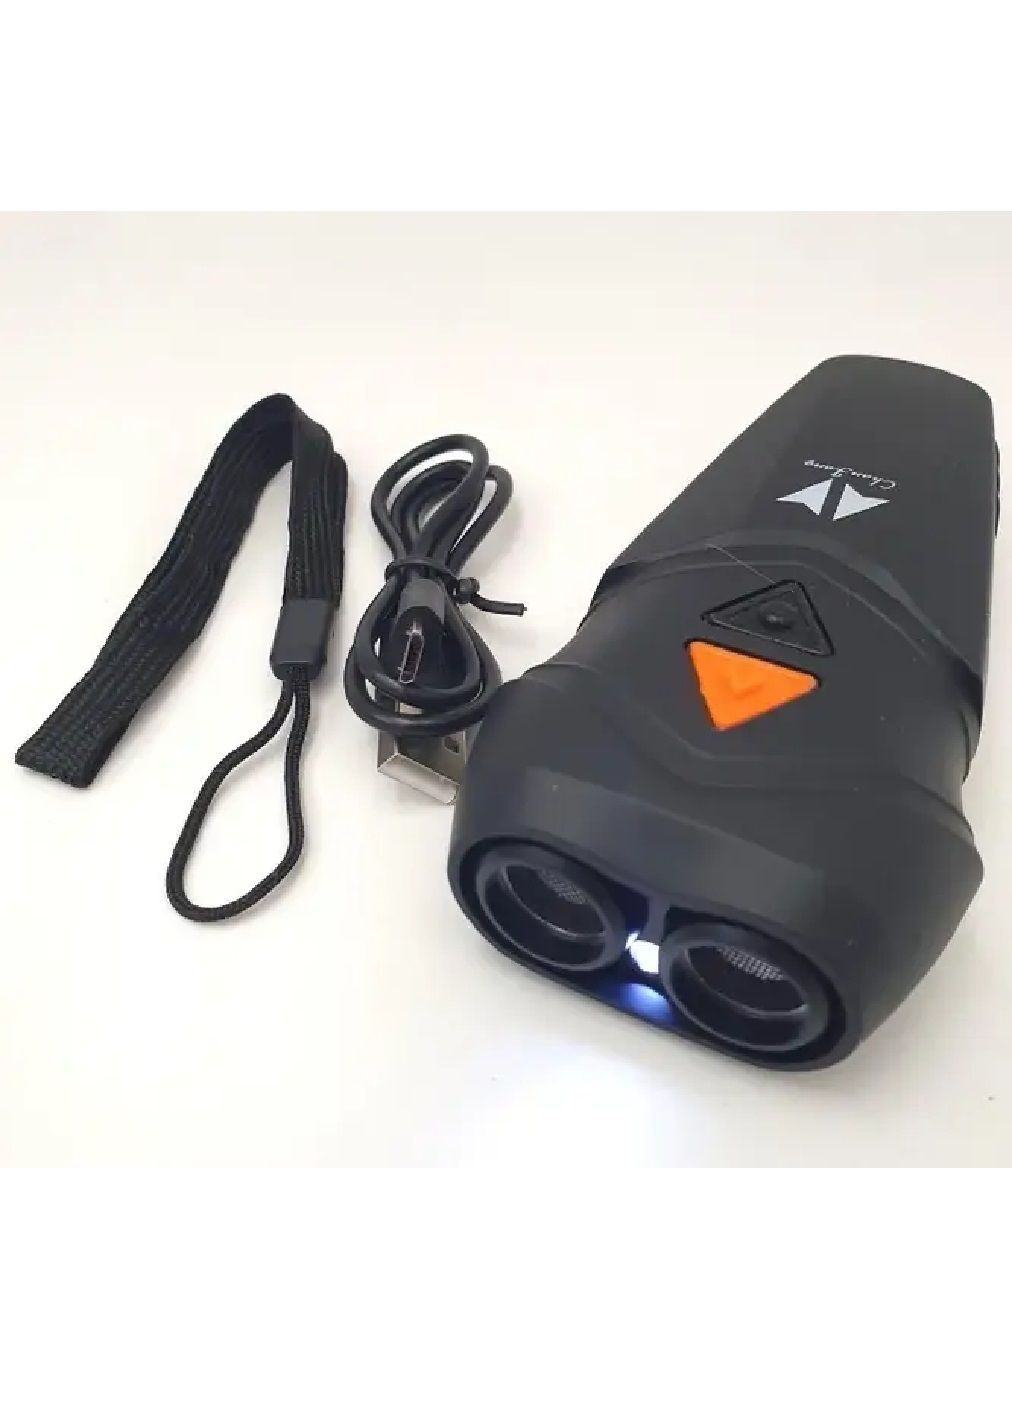 Мощный ультразвуковой аккумуляторный отпугиватель собак два сонара подсветка радиус действия 20 м (476274-Prob) Черный Unbranded (278052287)